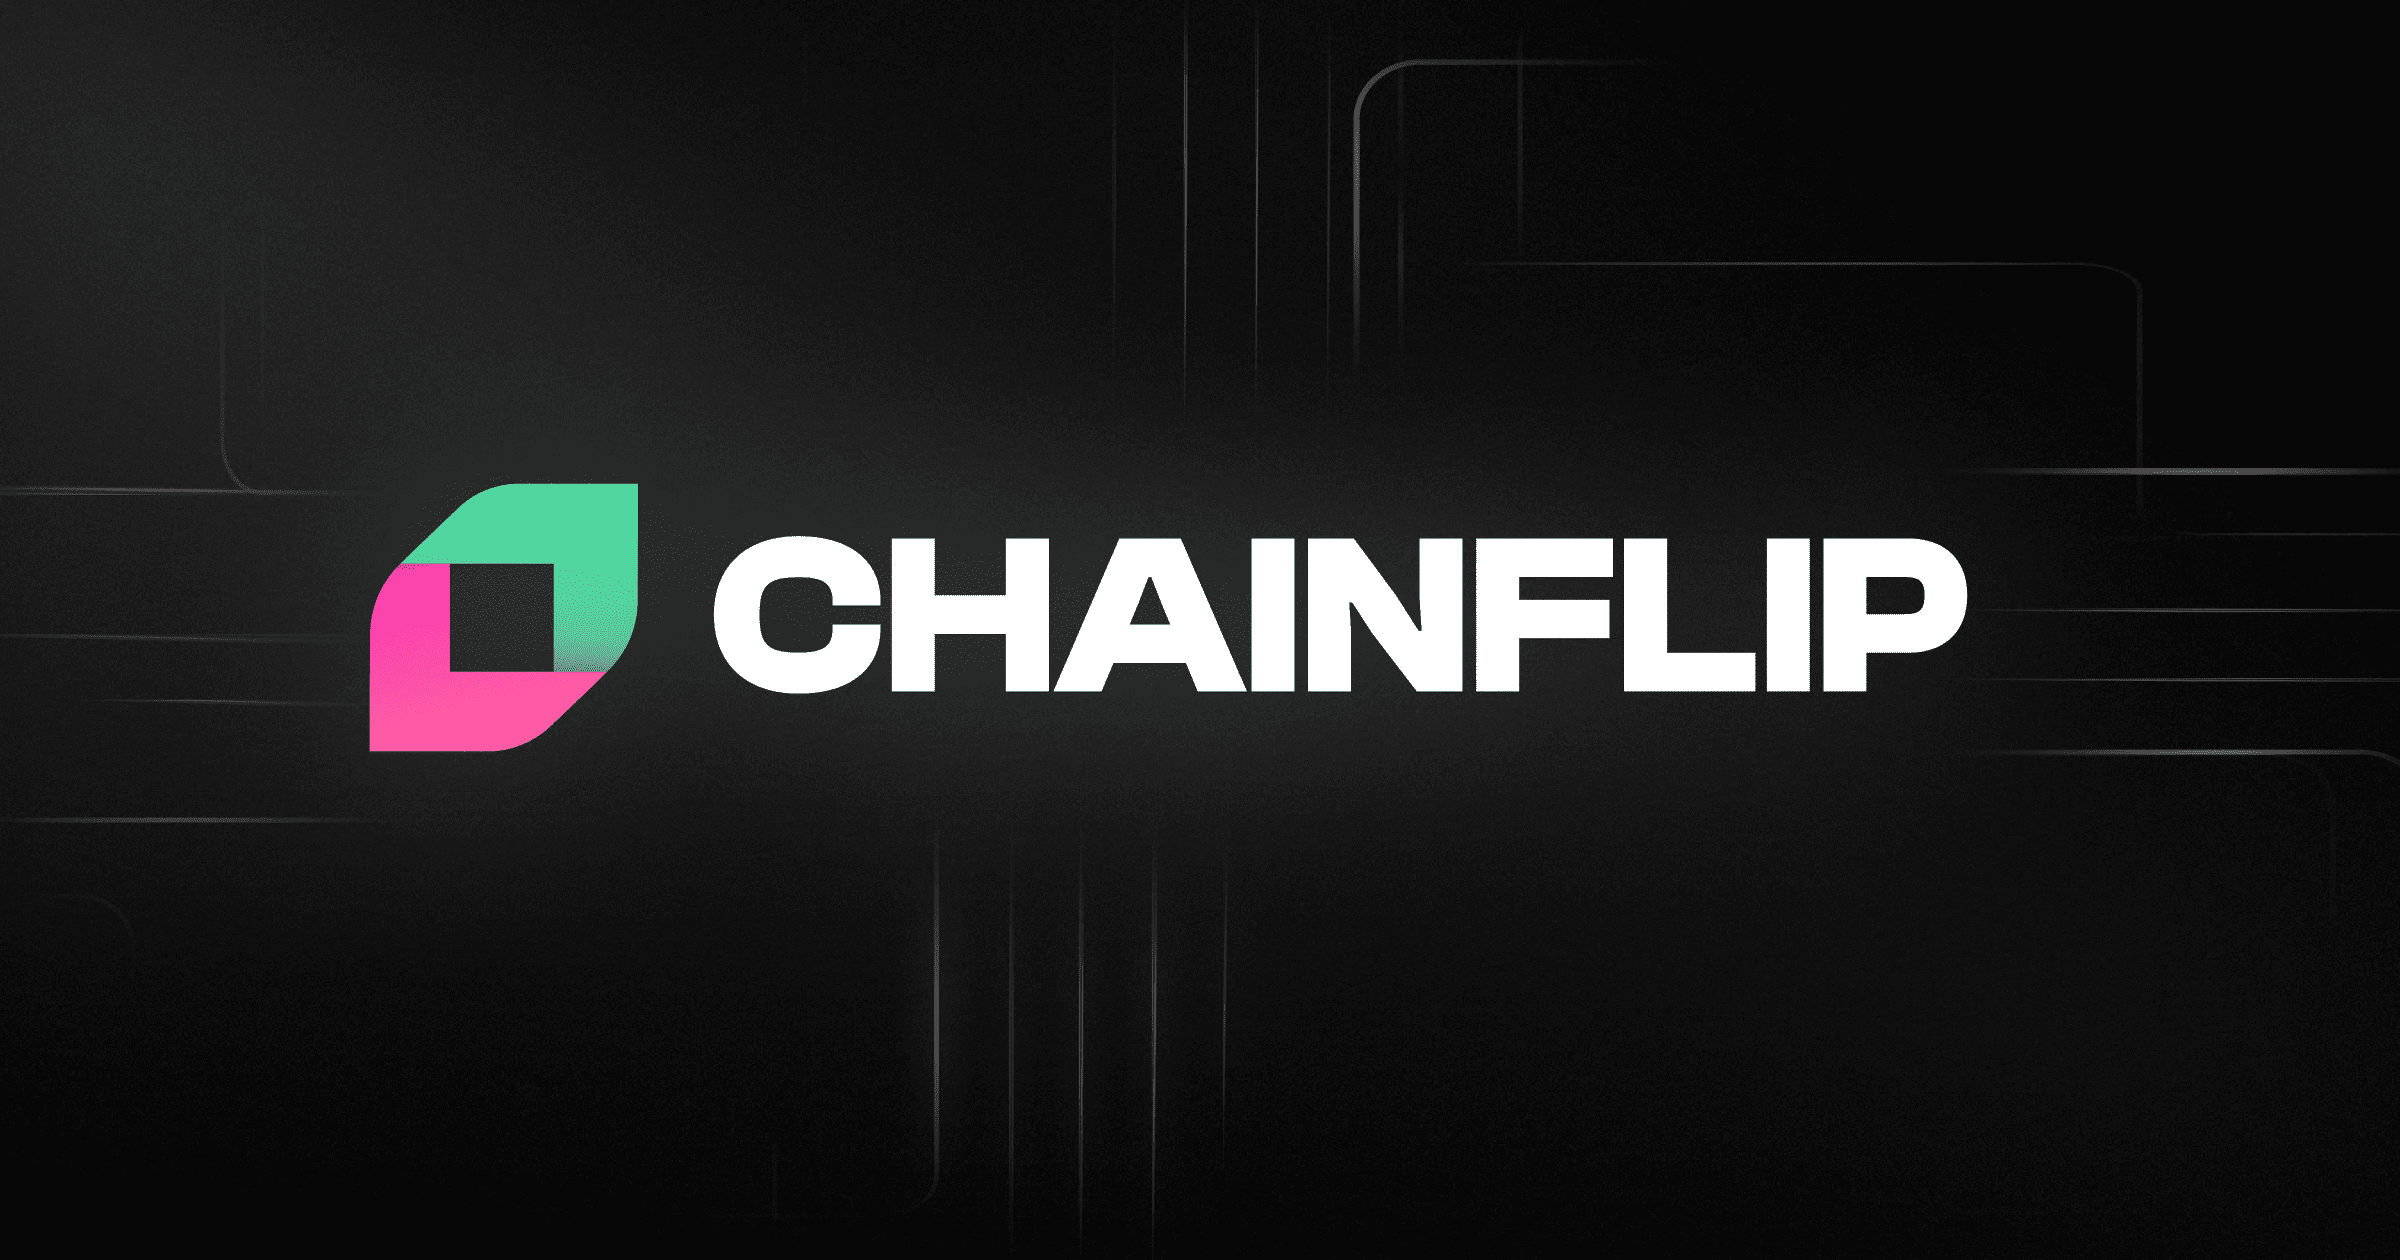 Chainflip là một giao thức cross-chain phi tập trung không cần cấp phép (Permissionless).